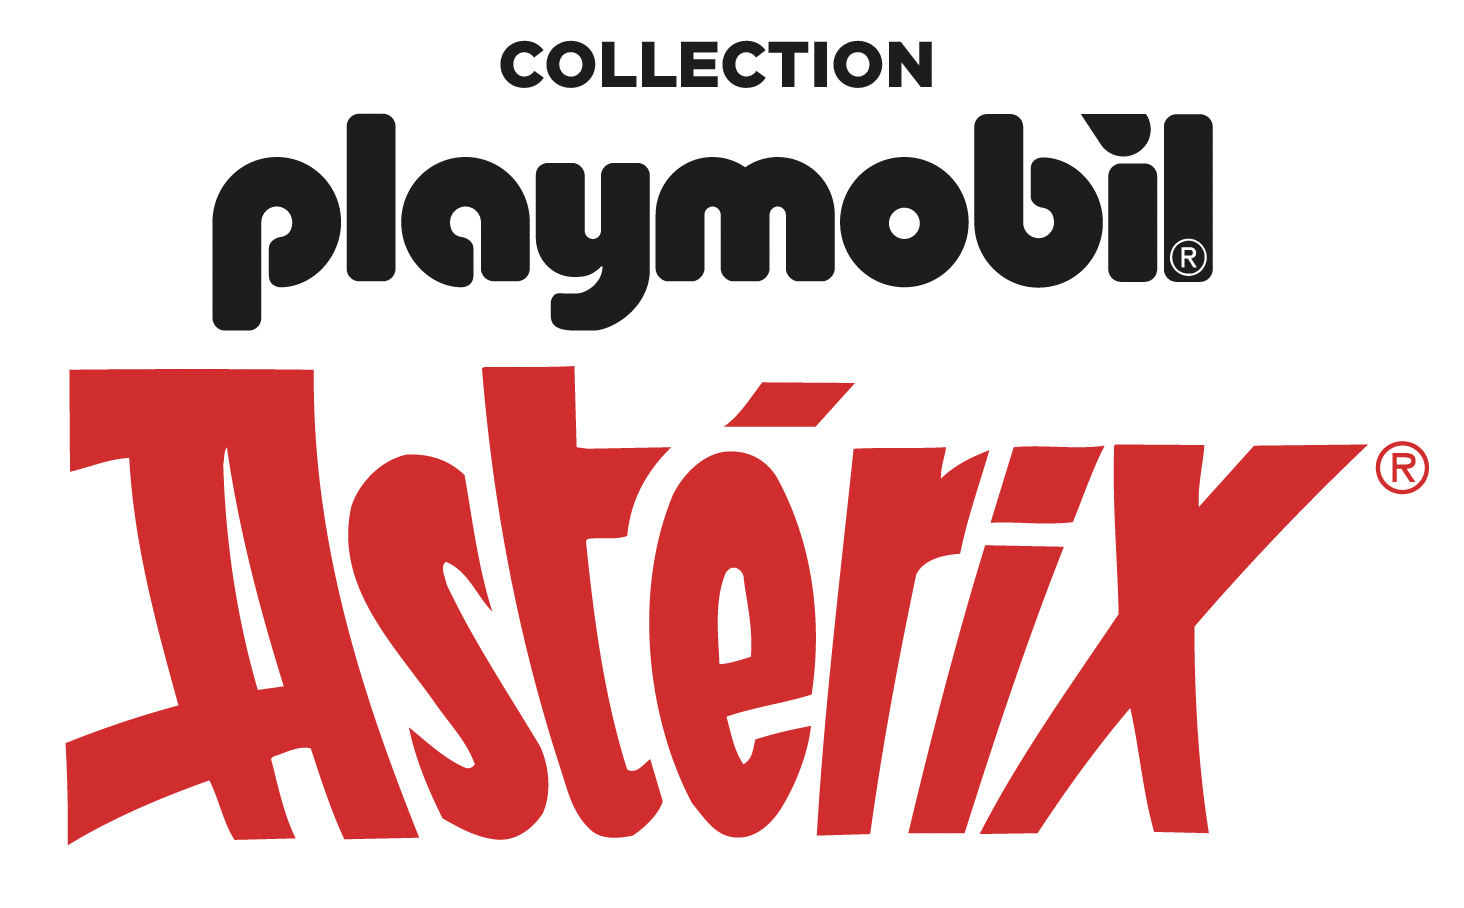 Astérix - Les légionnaires romains - Playmobil